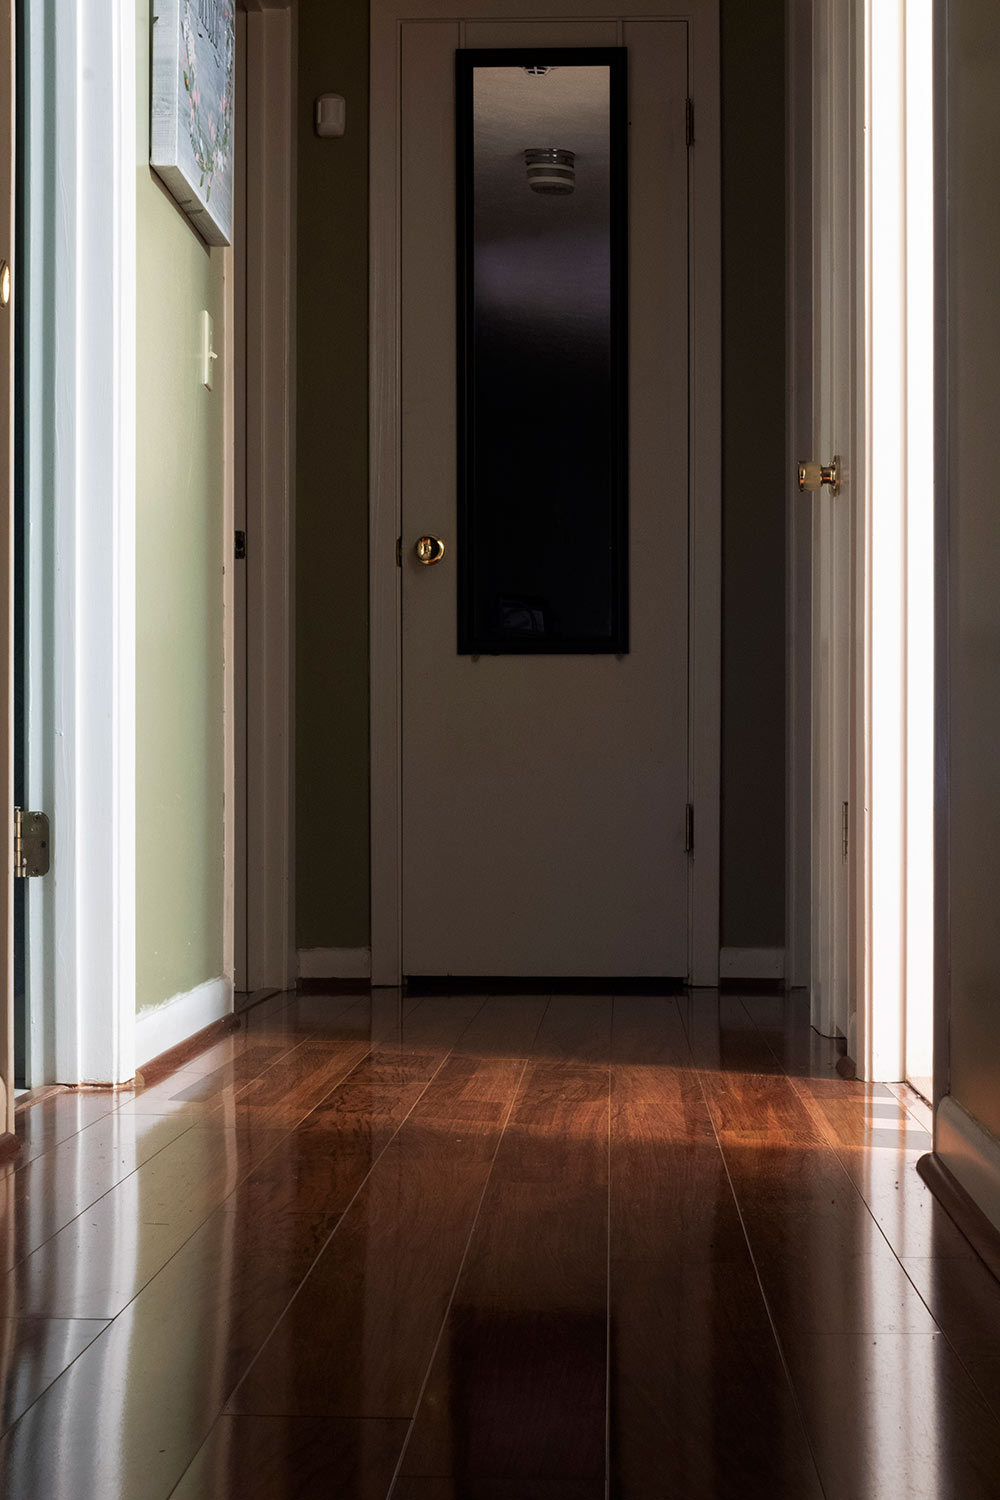 view of a hallway with door at back. help me written across floor